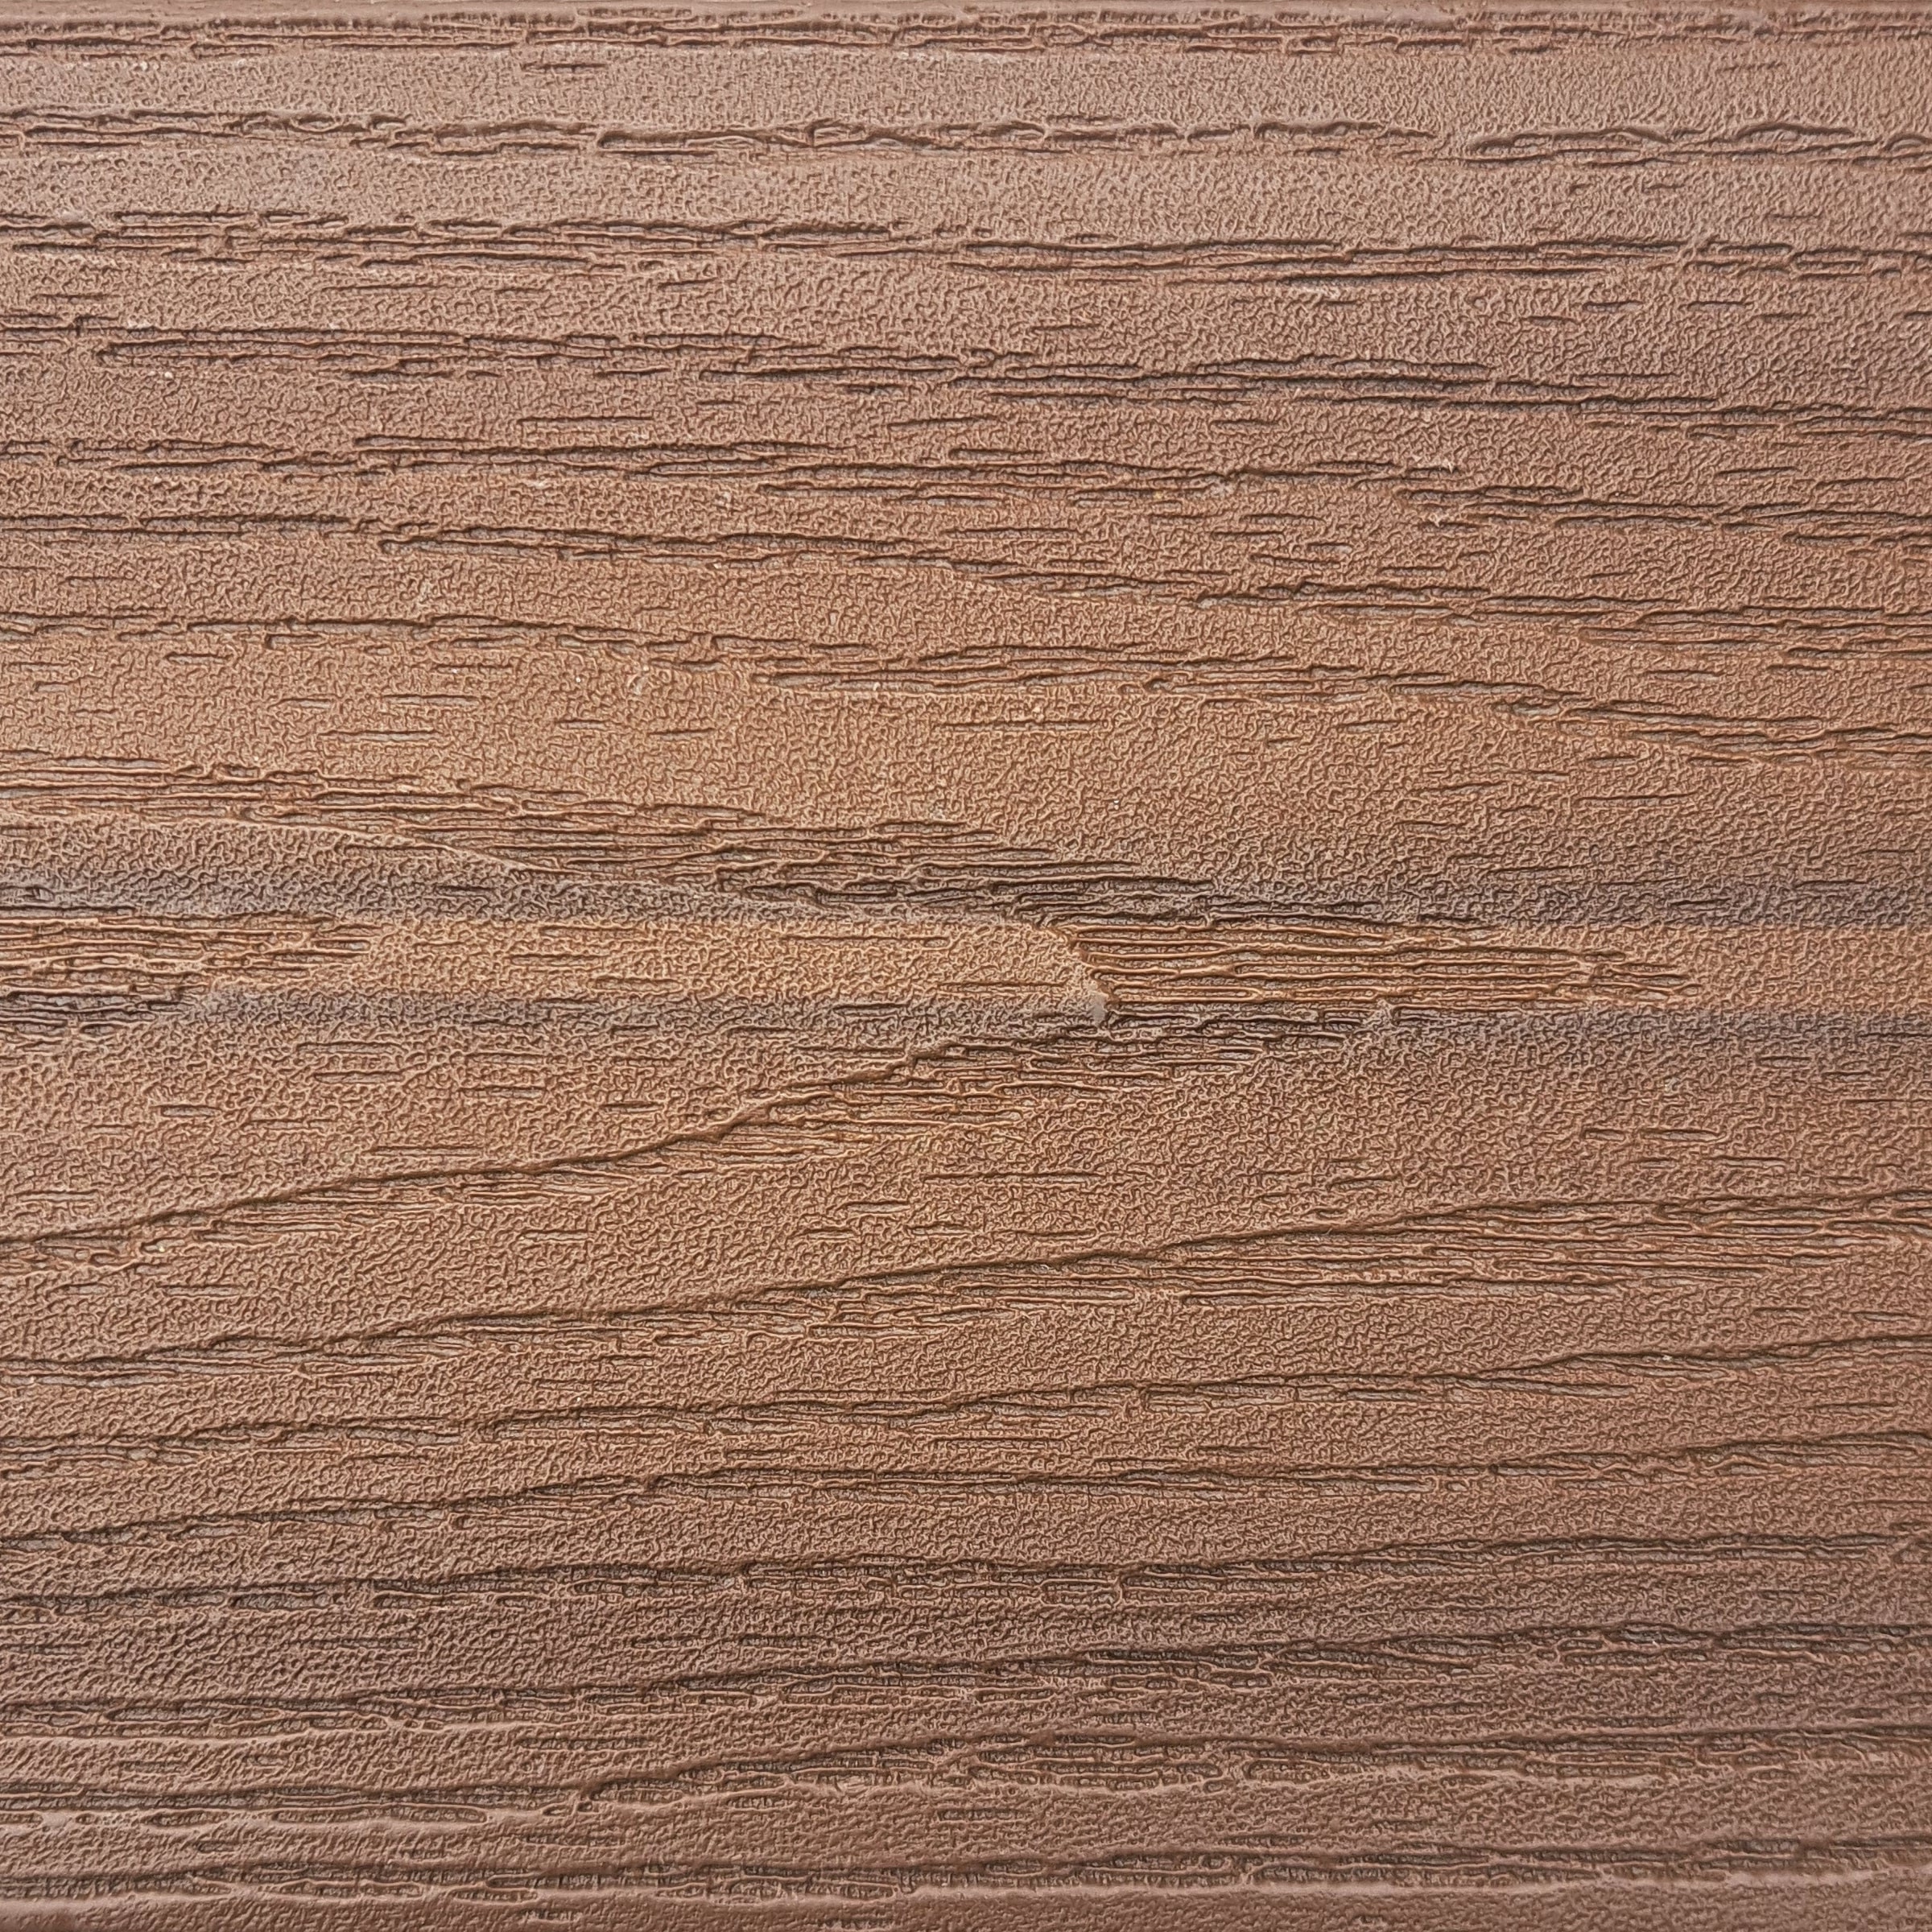 Texture of Fiberon Bungalow Decking